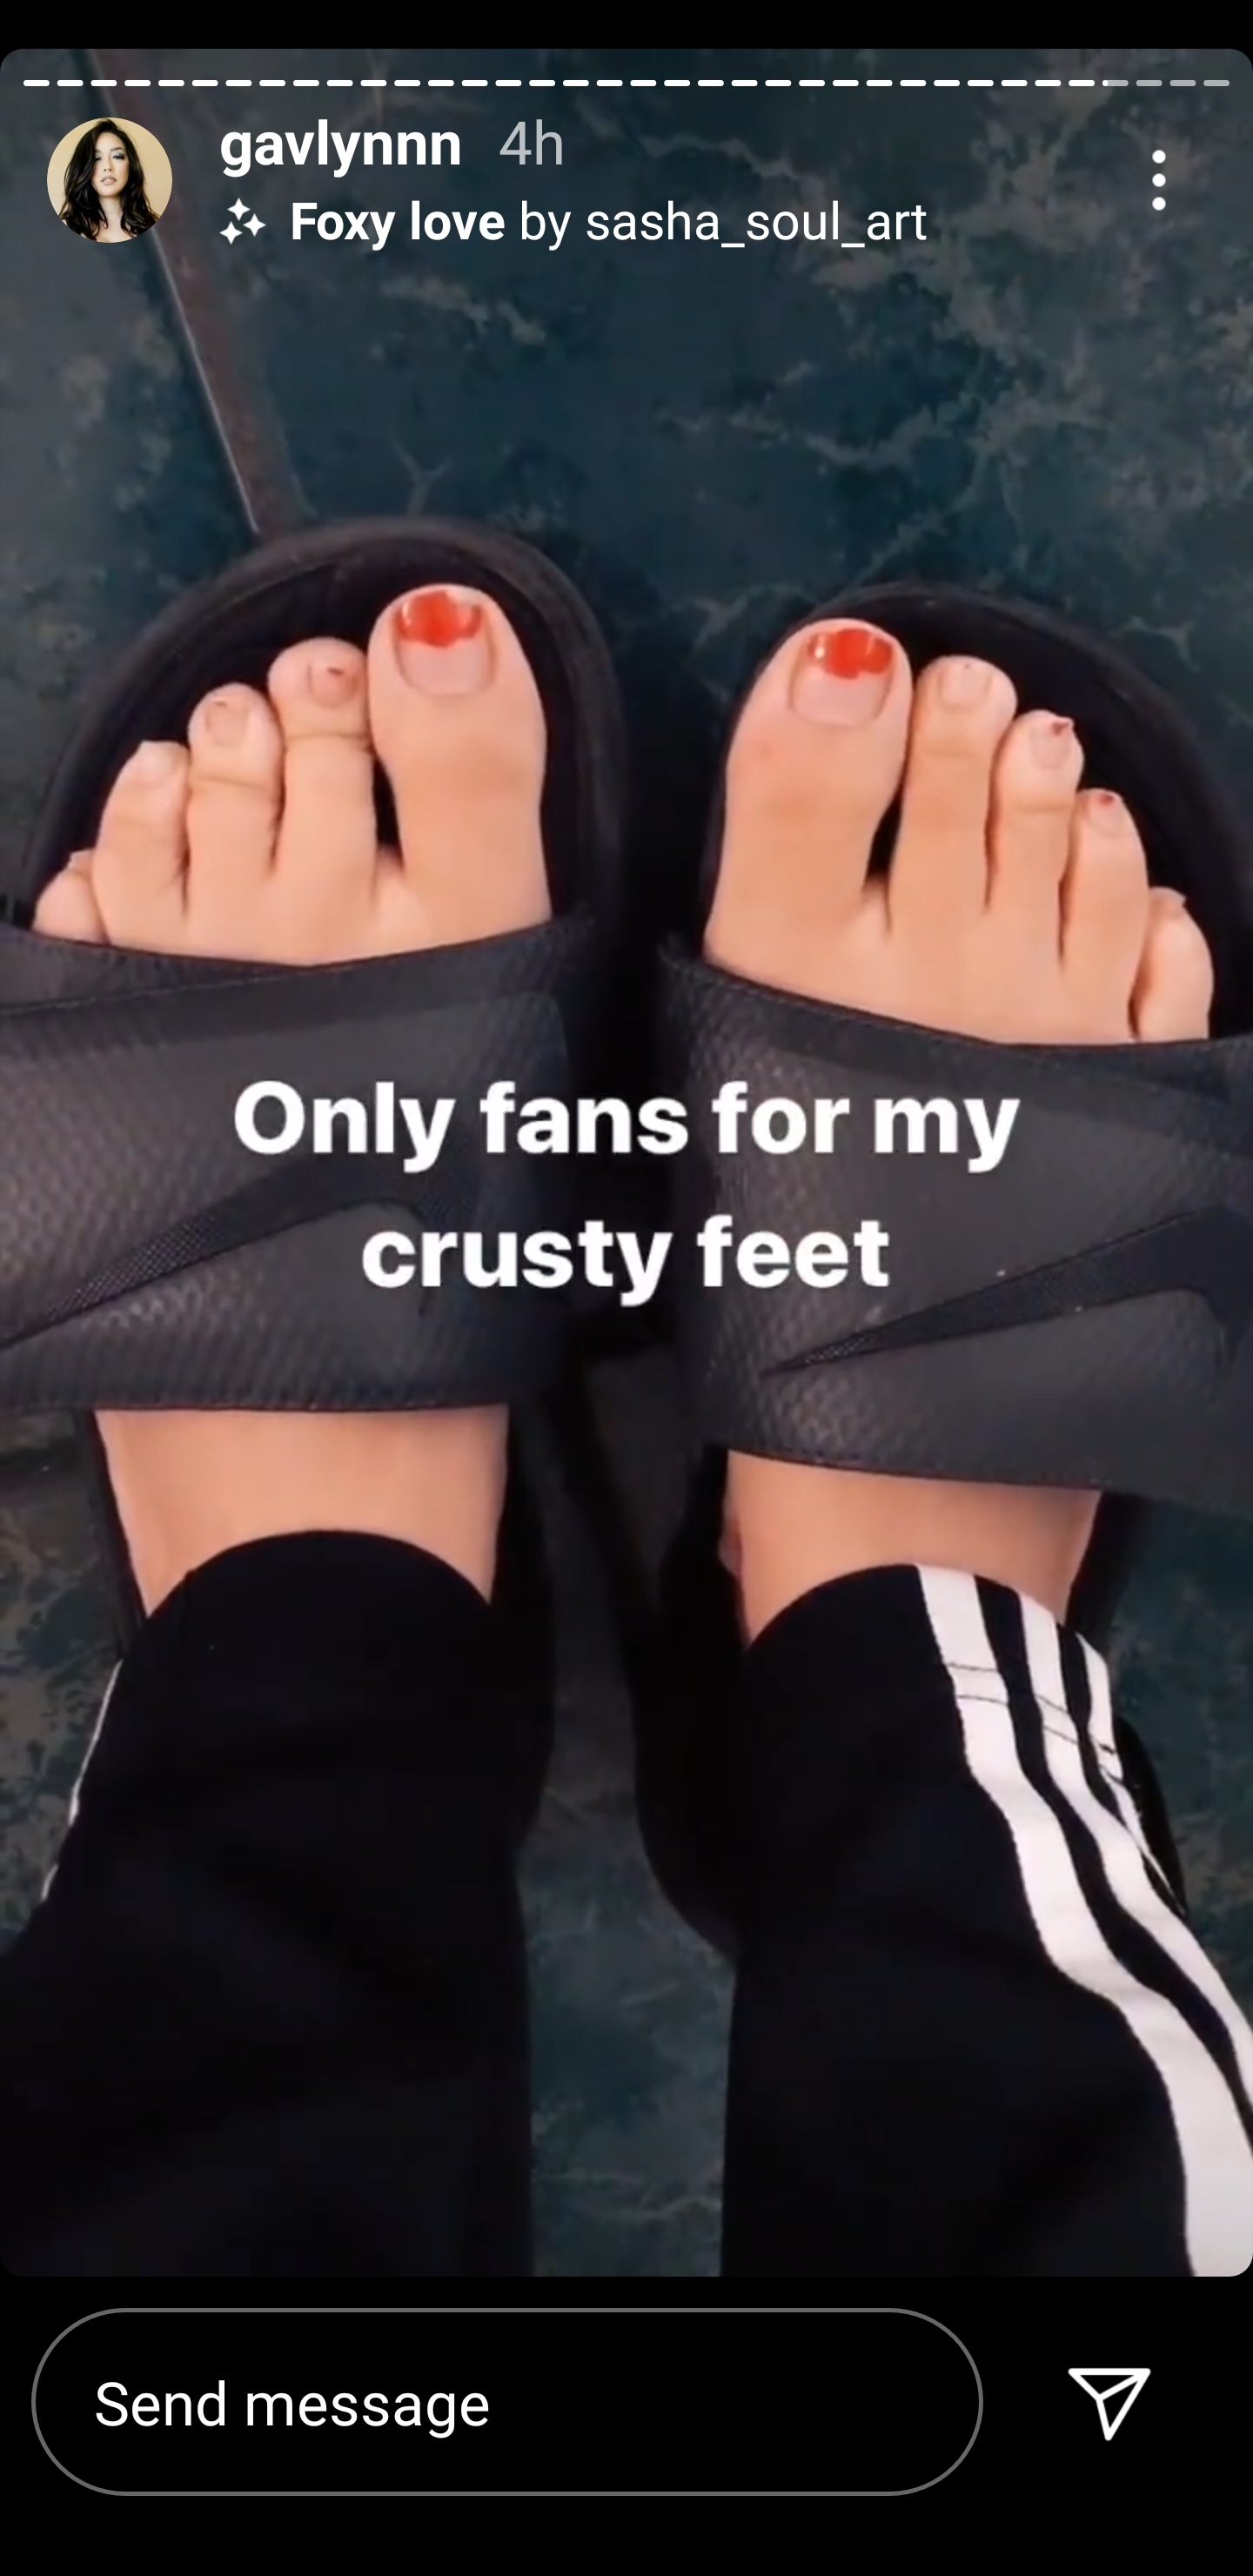 Onlyfans for feet